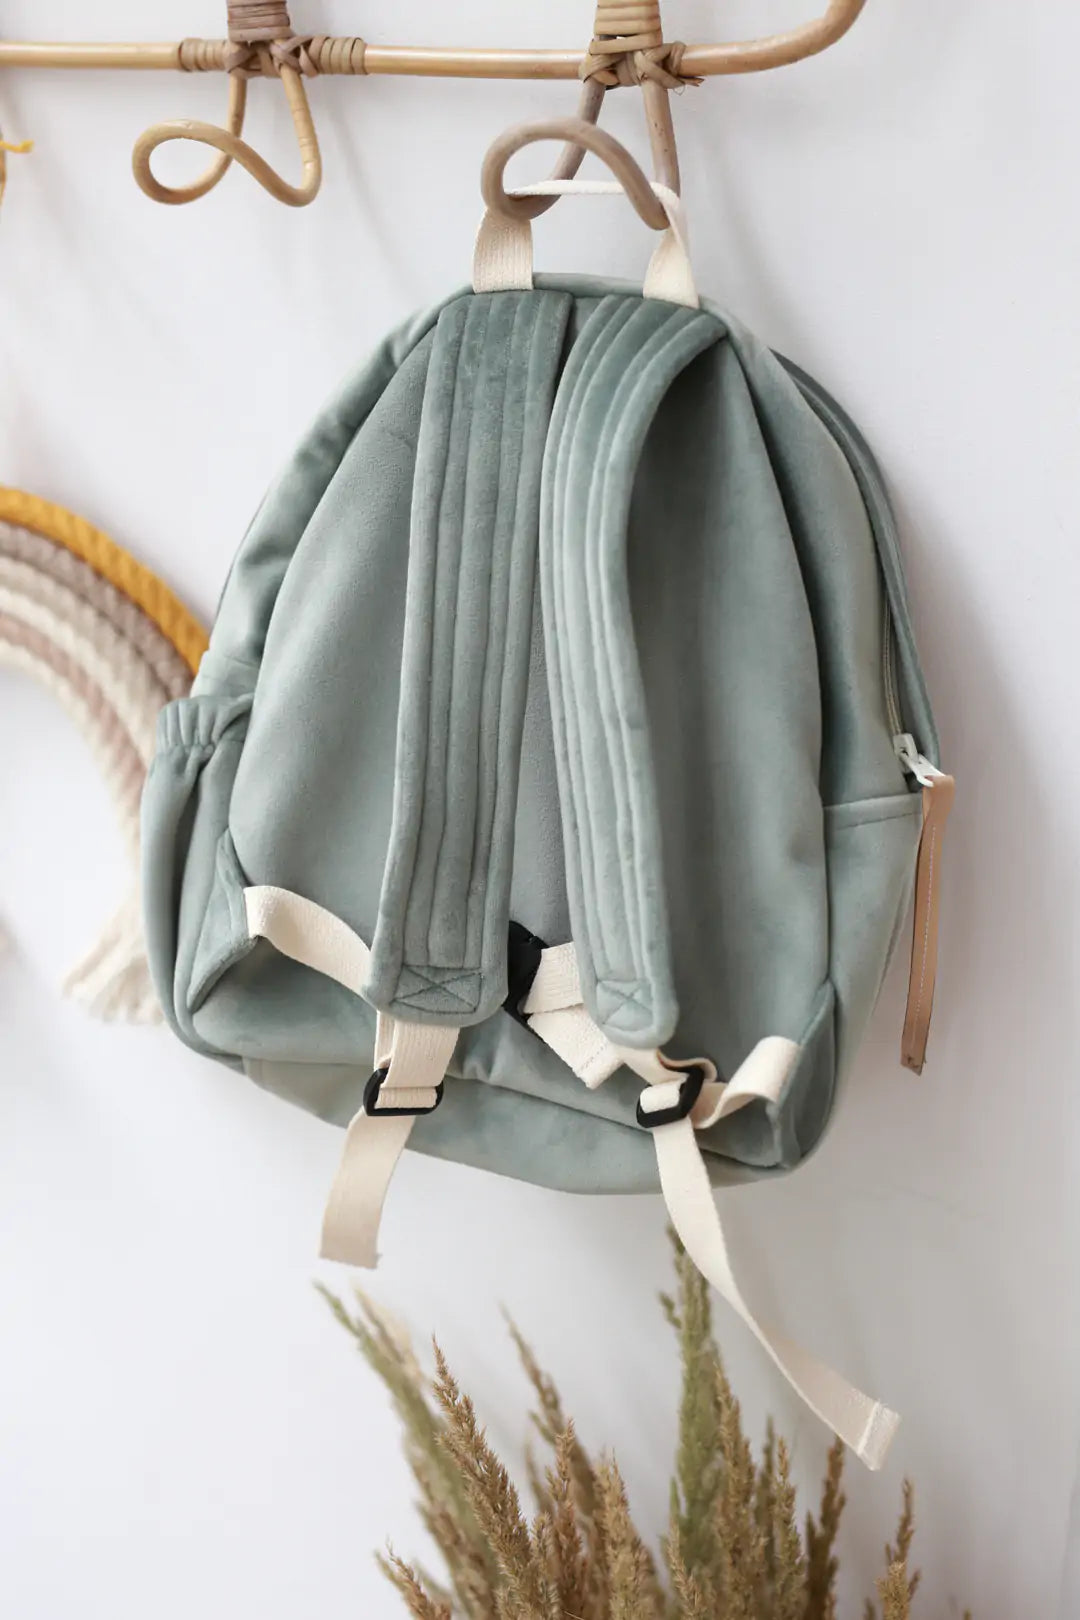 Plecak dla przedszkolaka – miętowy